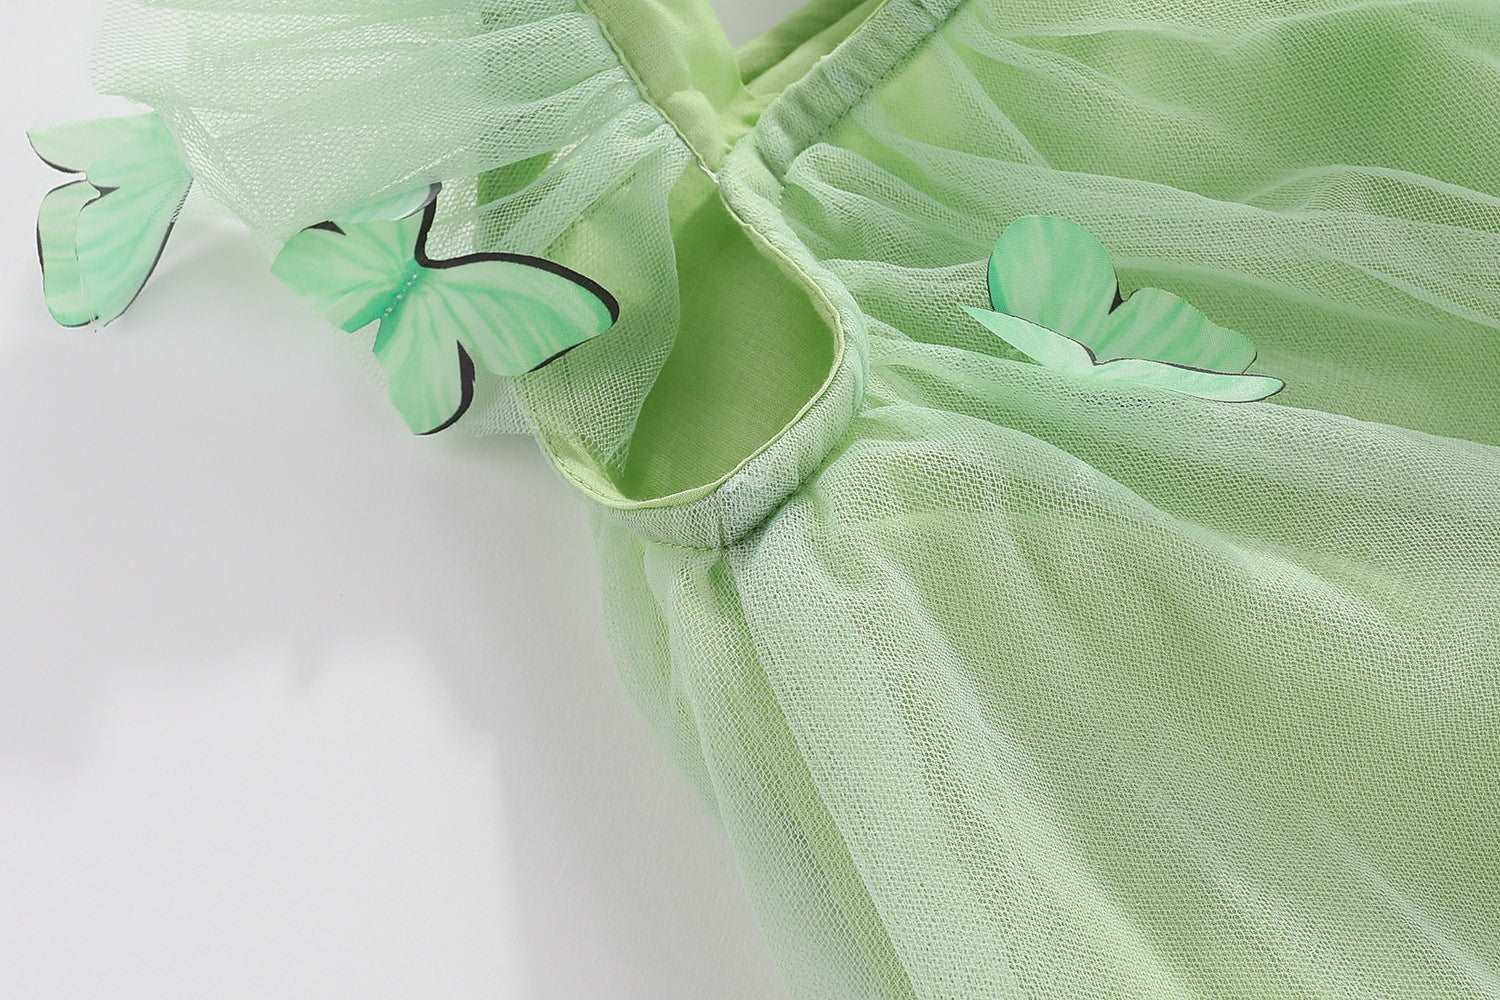 Baby Girl Little Butterfly Princess Flounced Sleeve Mesh Dress